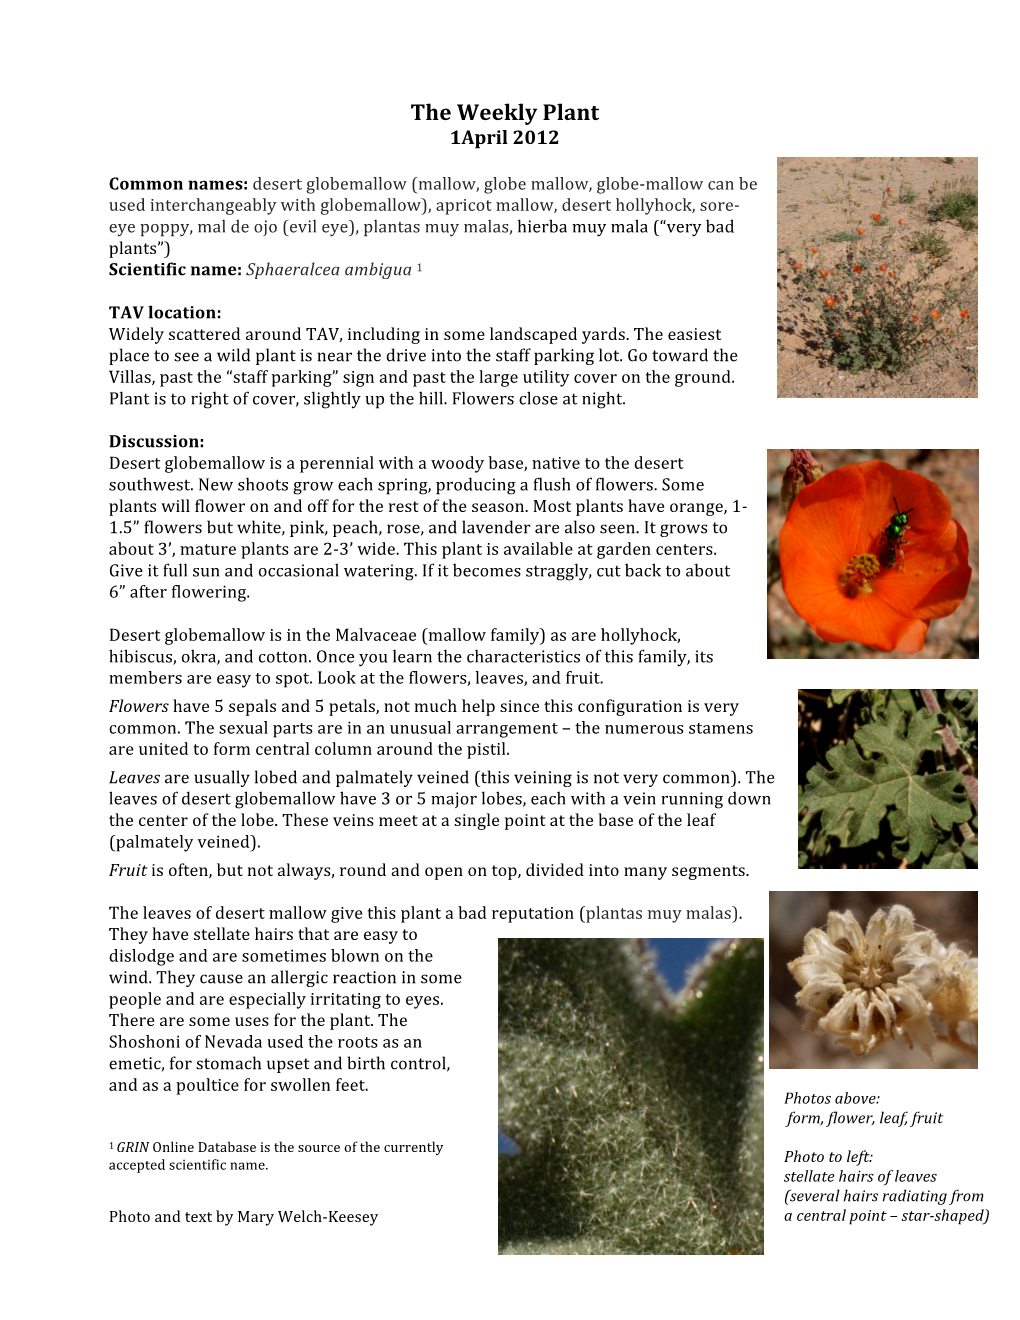 Sphaeralcea Ambigua Desert Globemallow 1Apr2012